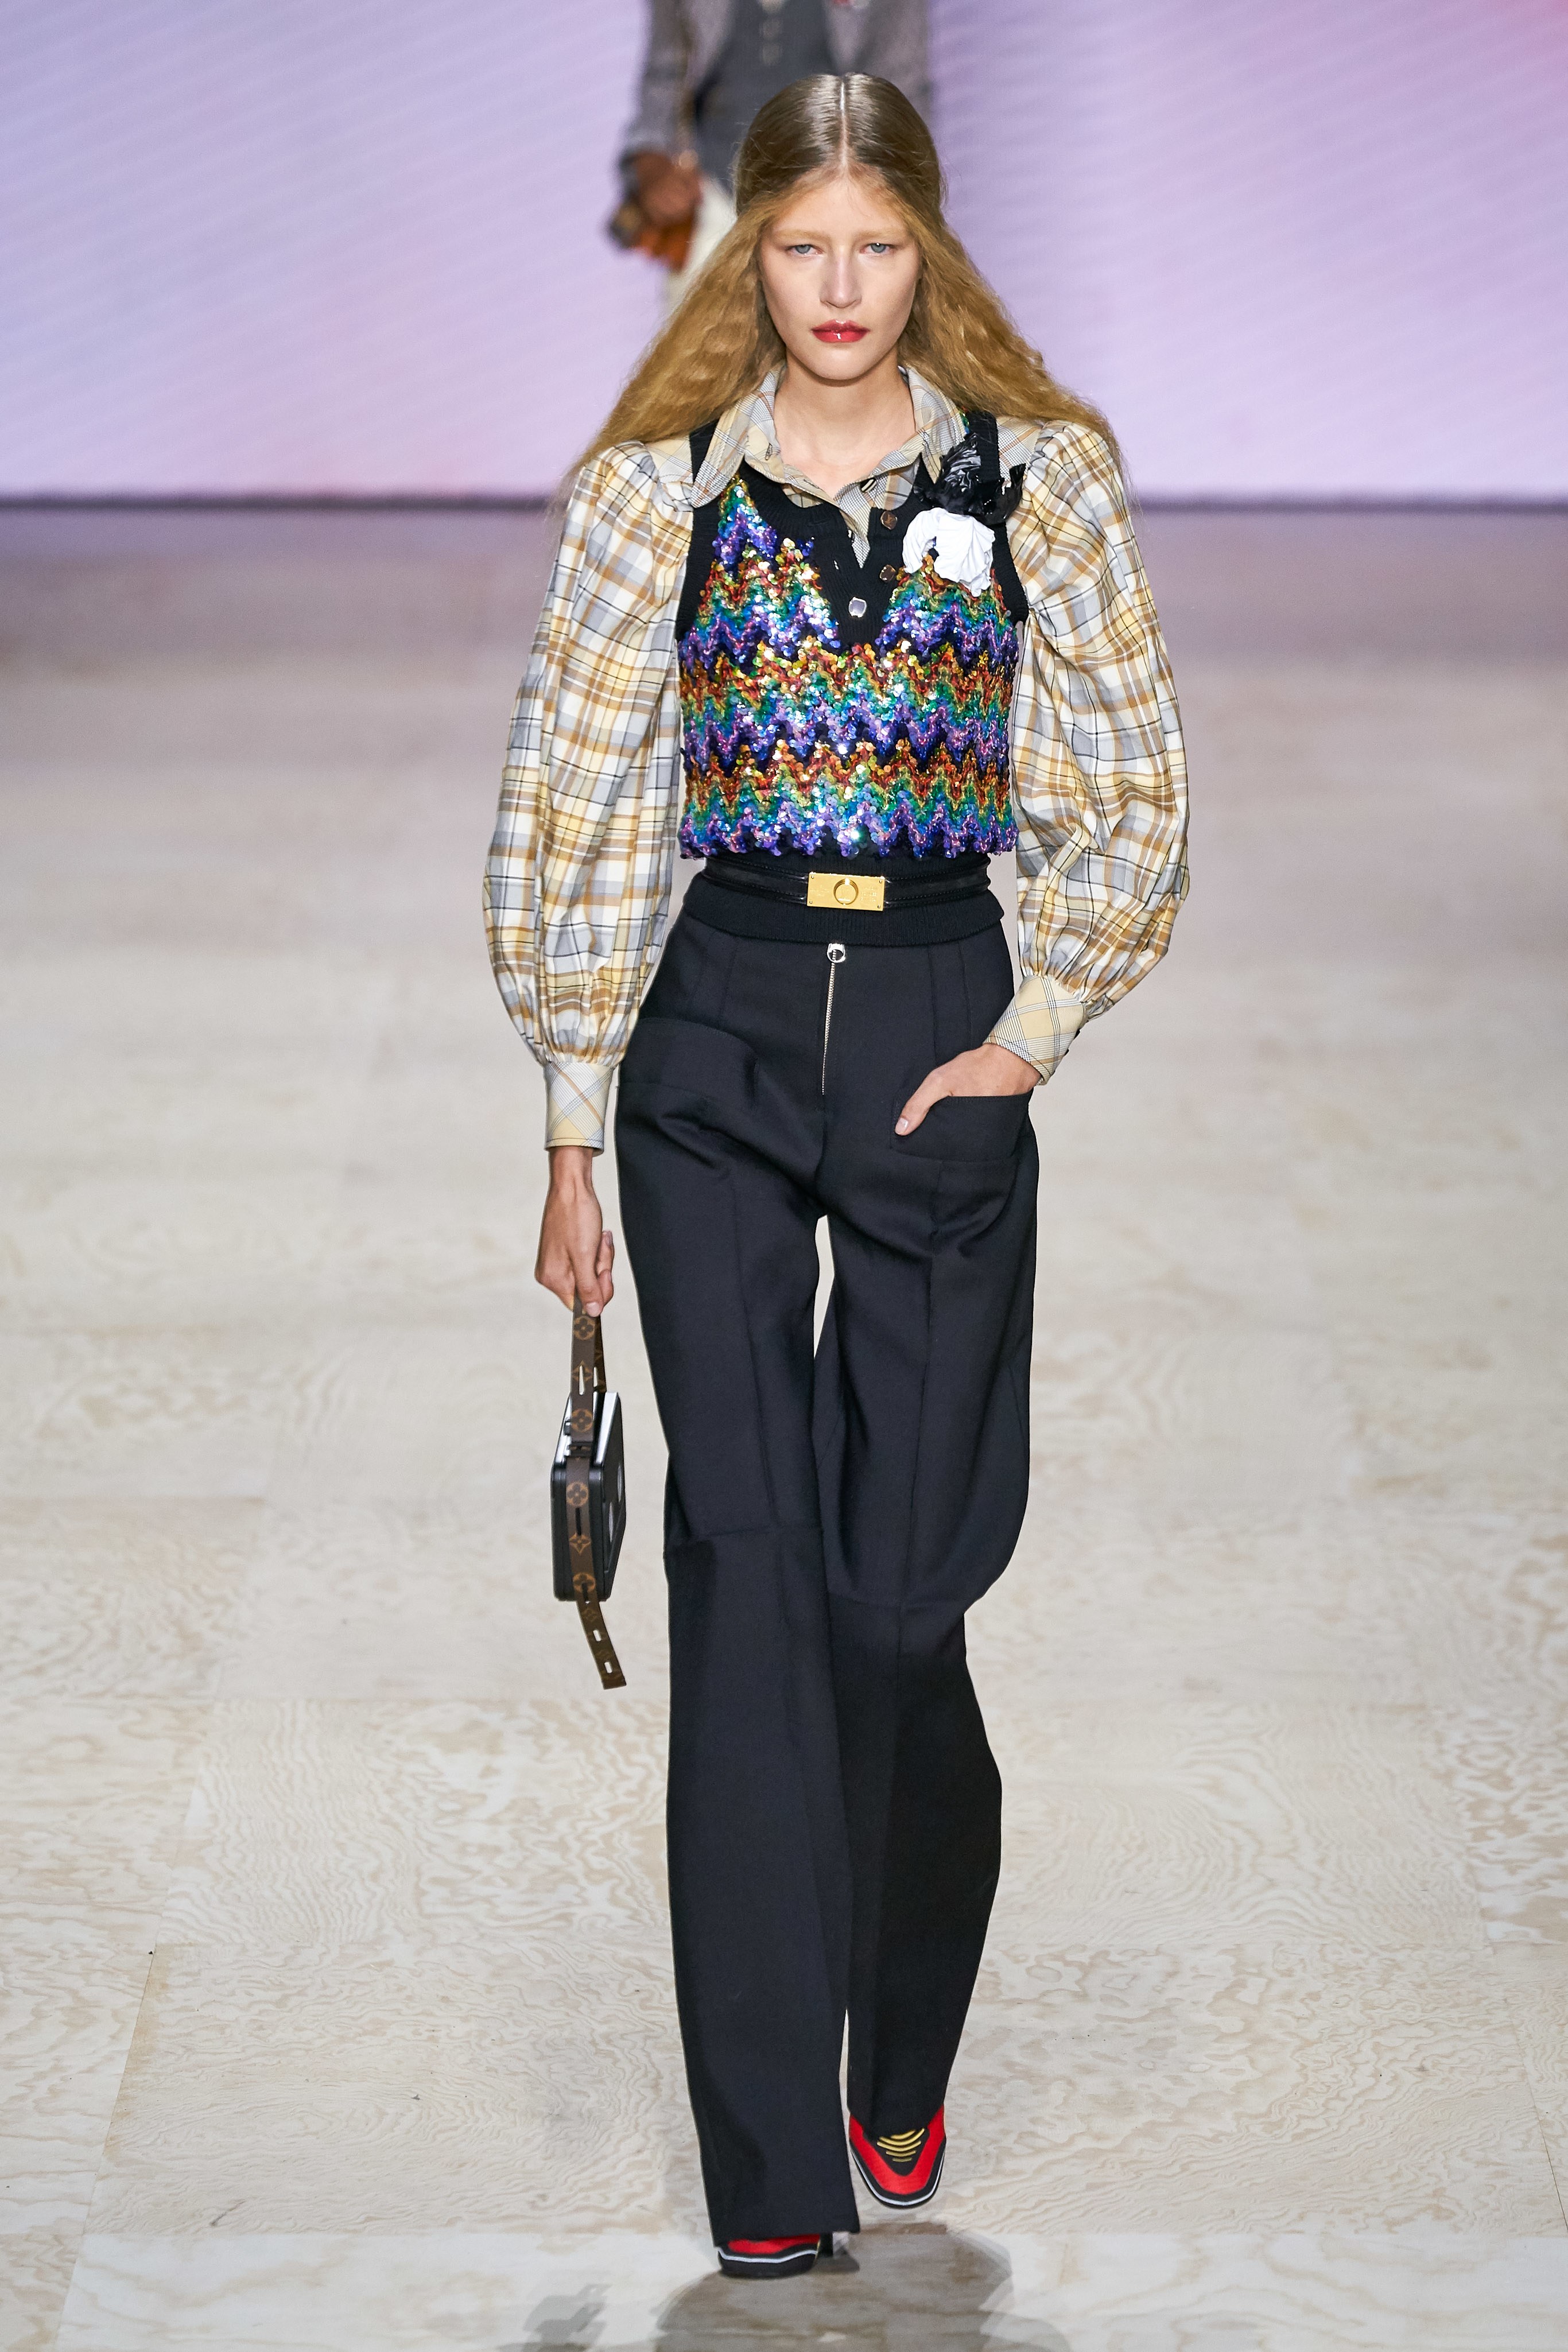 Louis Vuitton Catwalk : The Complete Fashion Collections – Place du Beau